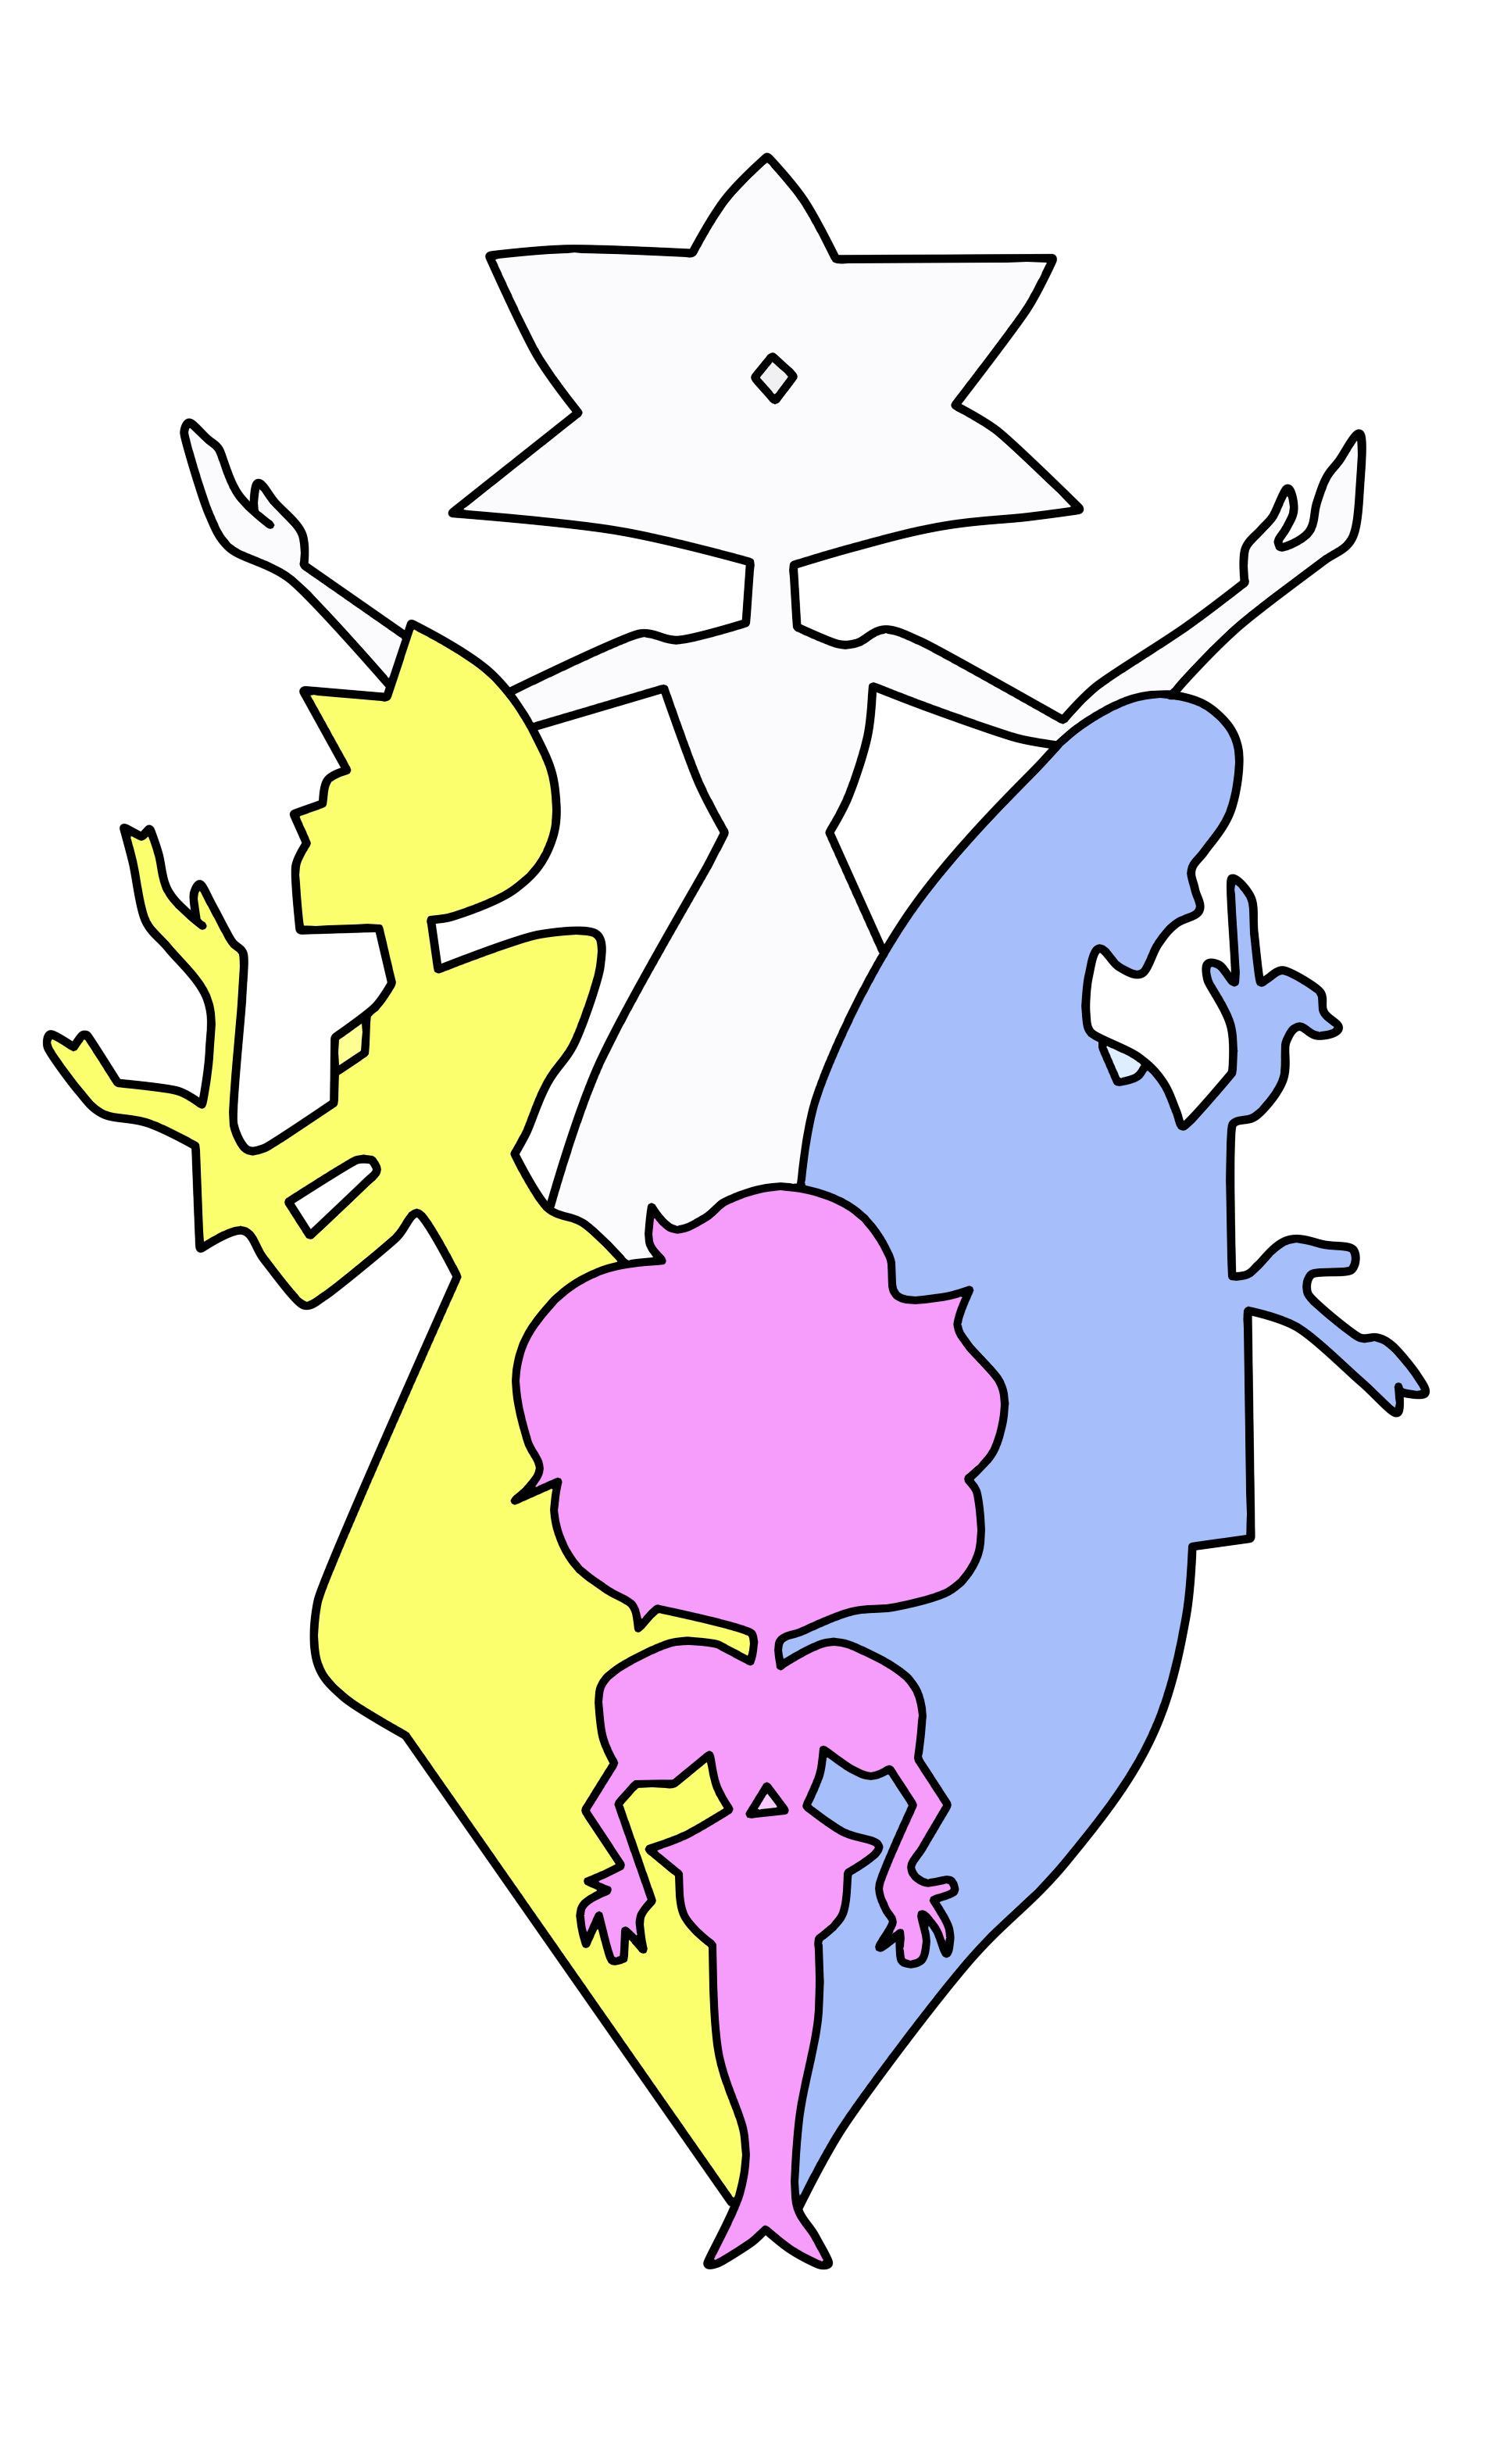 Steven Universe Diamonds Logo Logodix - roblox wiki universe